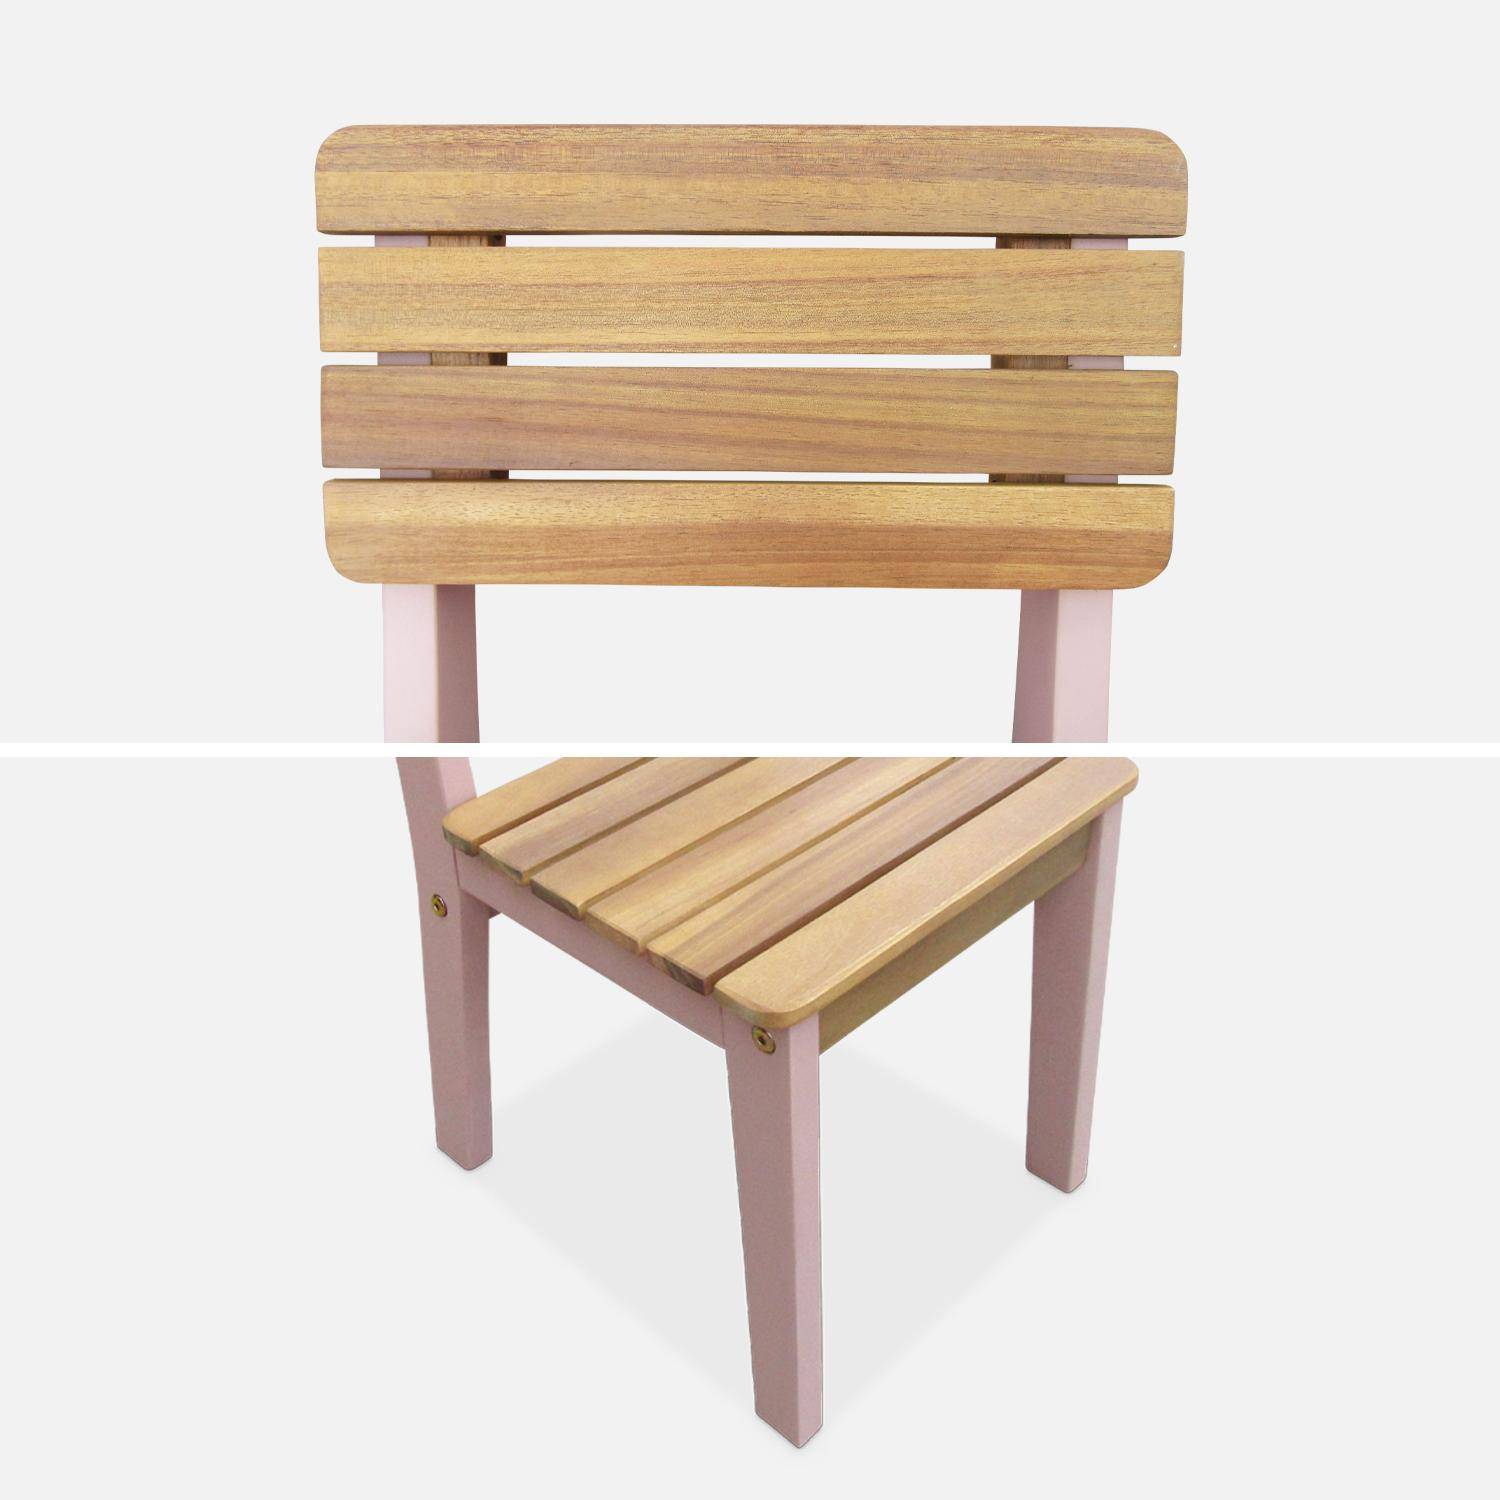  Lot de 2 chaises en bois d'acacia FSC pour enfant, salon de jardin enfant rose, intérieur / extérieur  Photo6